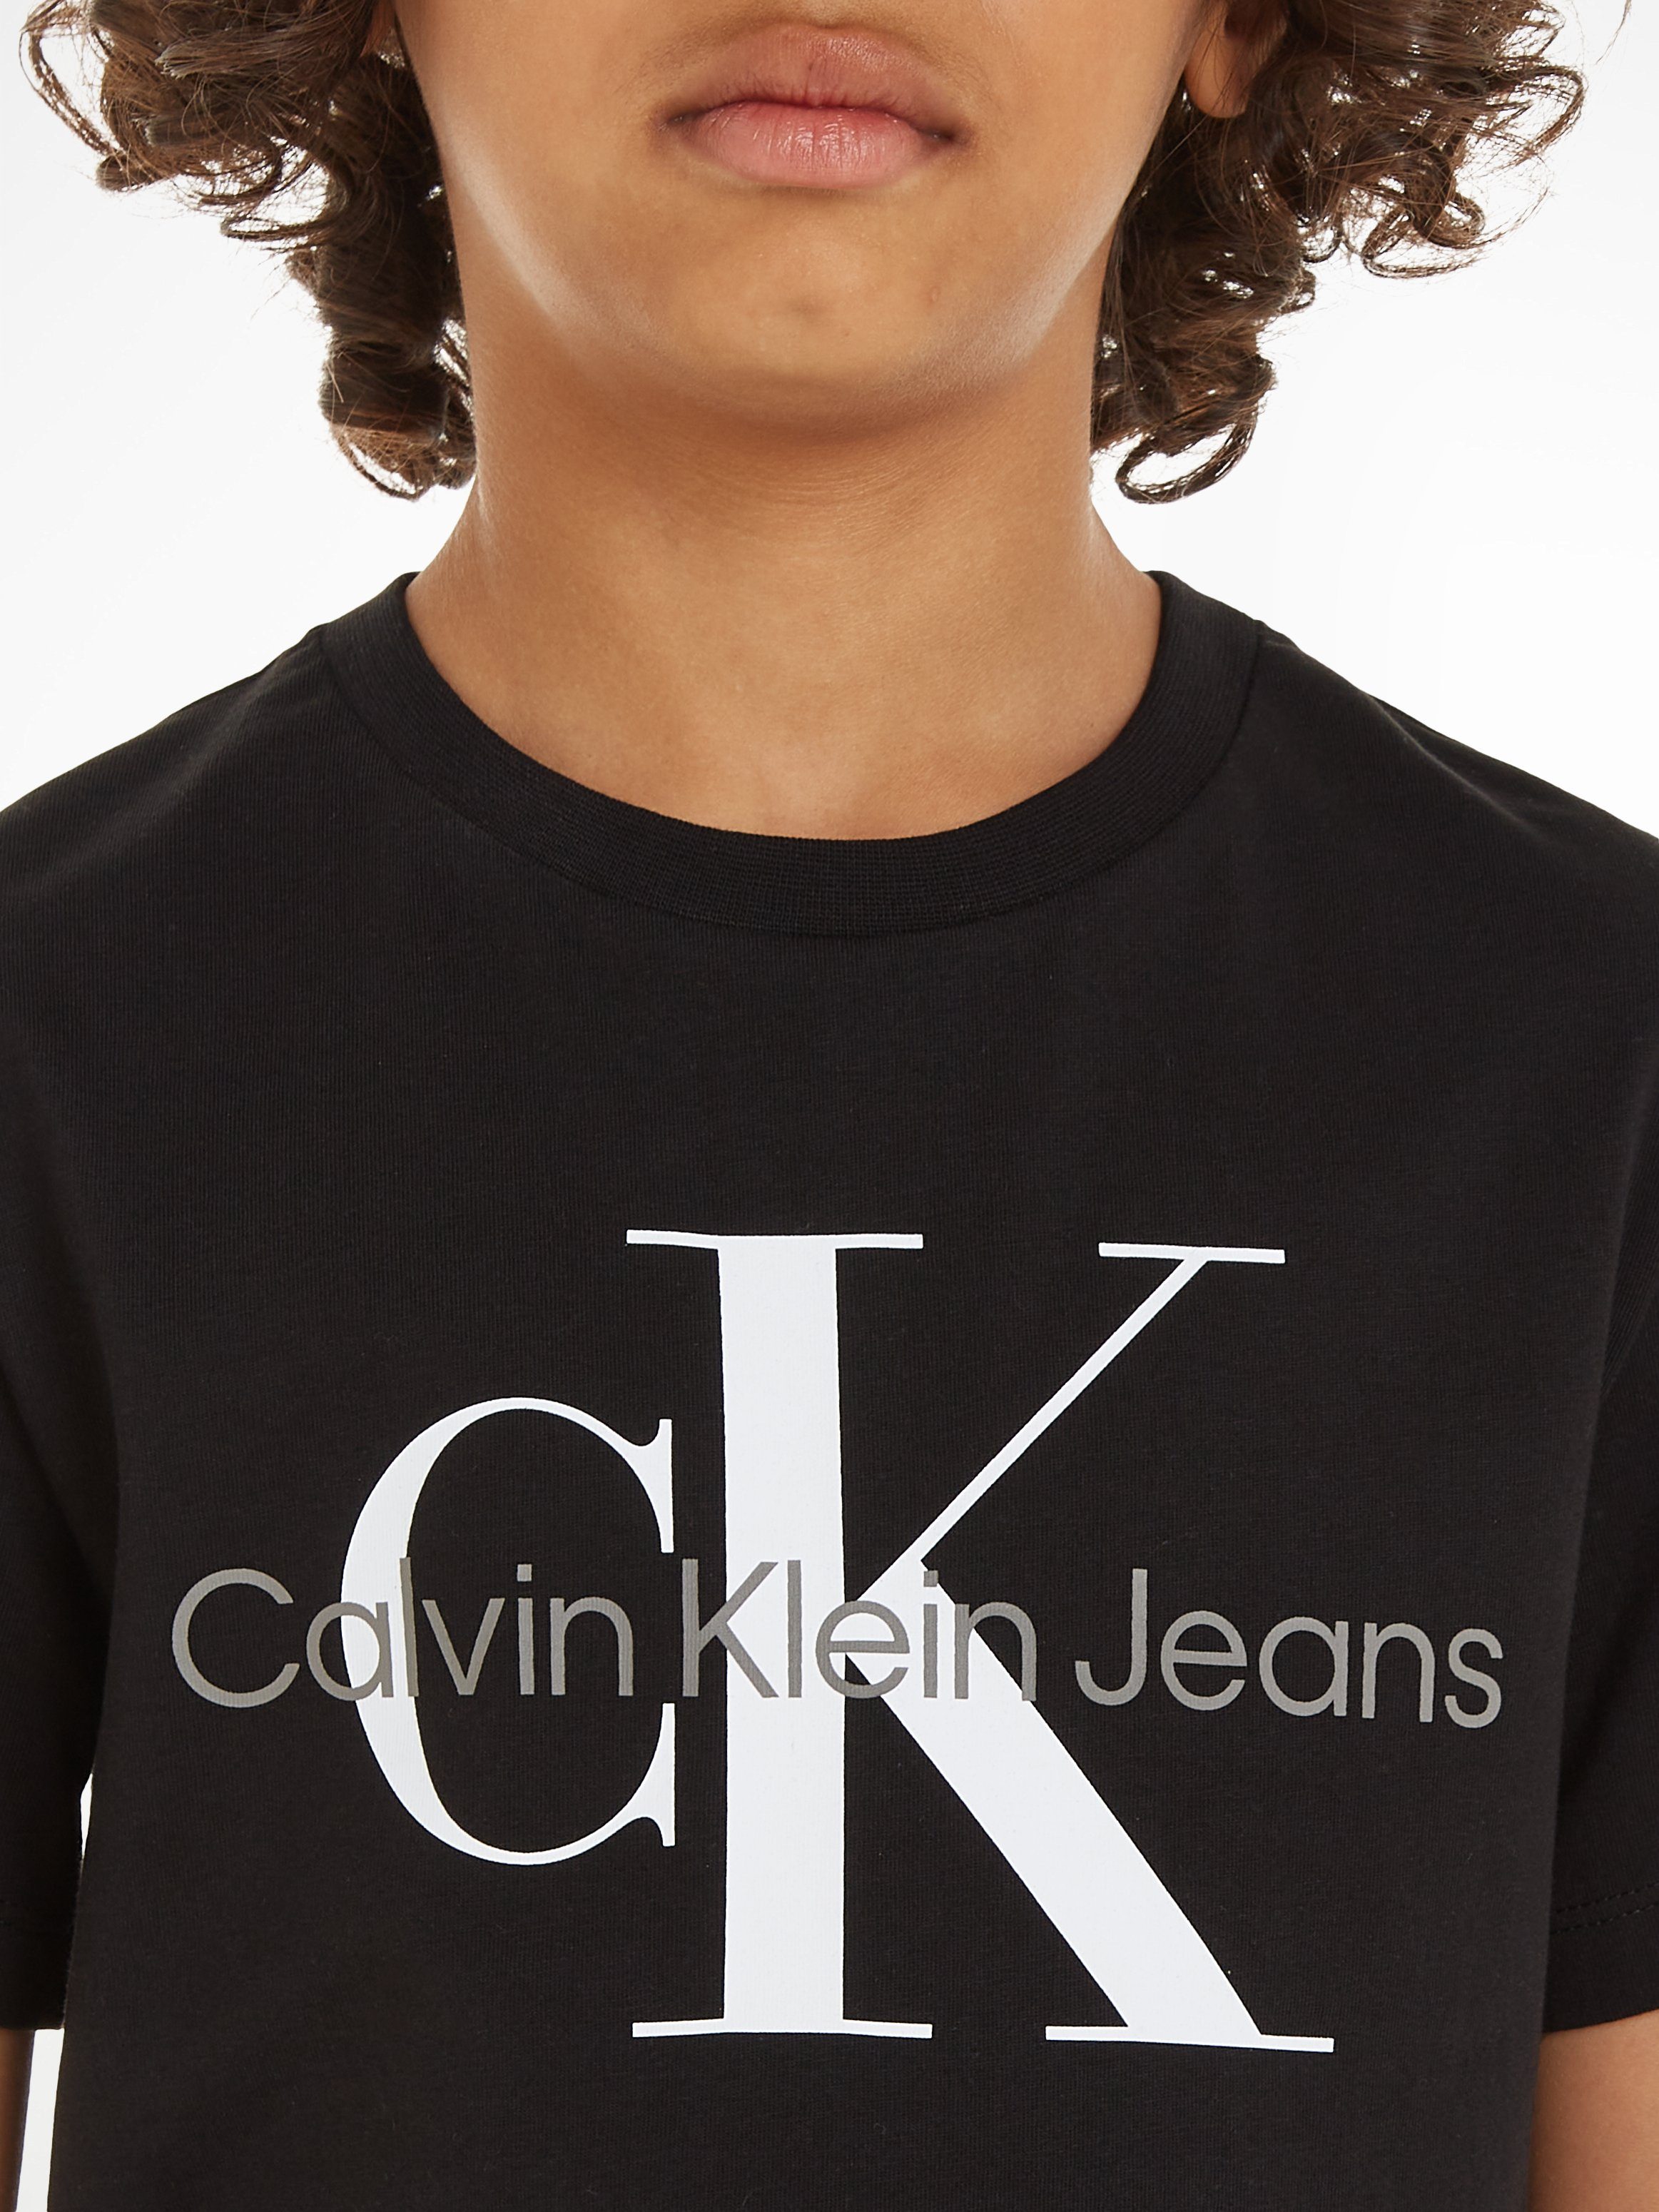 MONOGRAM SS Black Klein Jeans CK Calvin T-Shirt T-SHIRT Ck